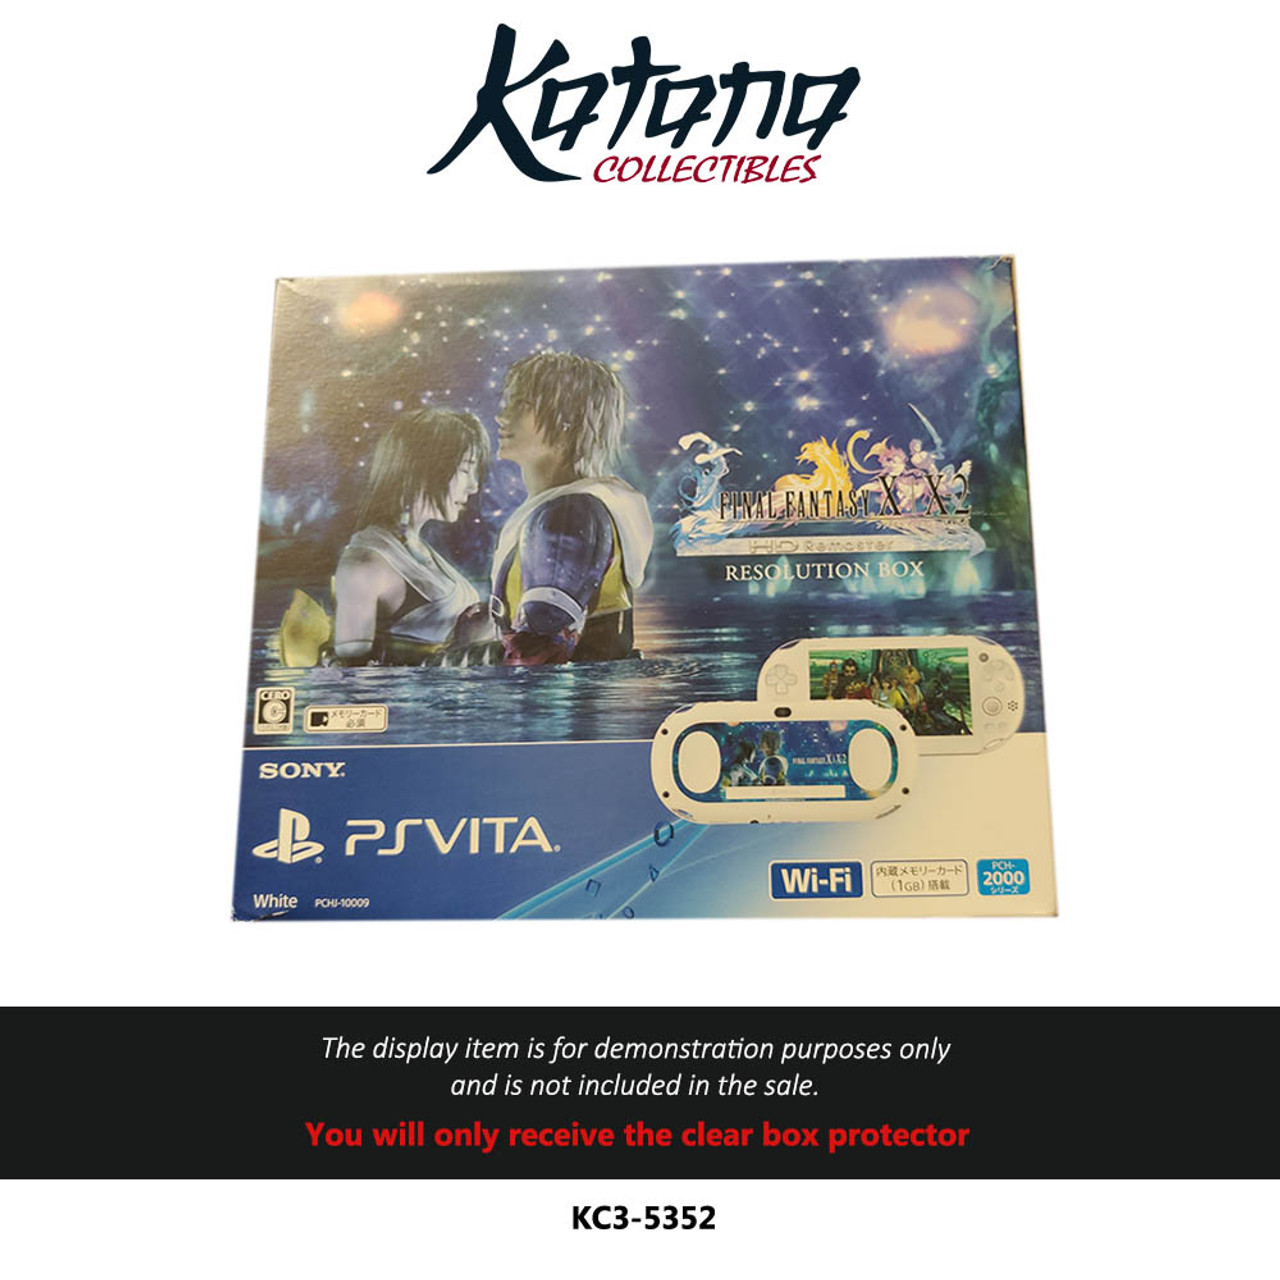 Katana Collectibles Protector For Final fantasy X and X2 Japanese playstation Vita bundle